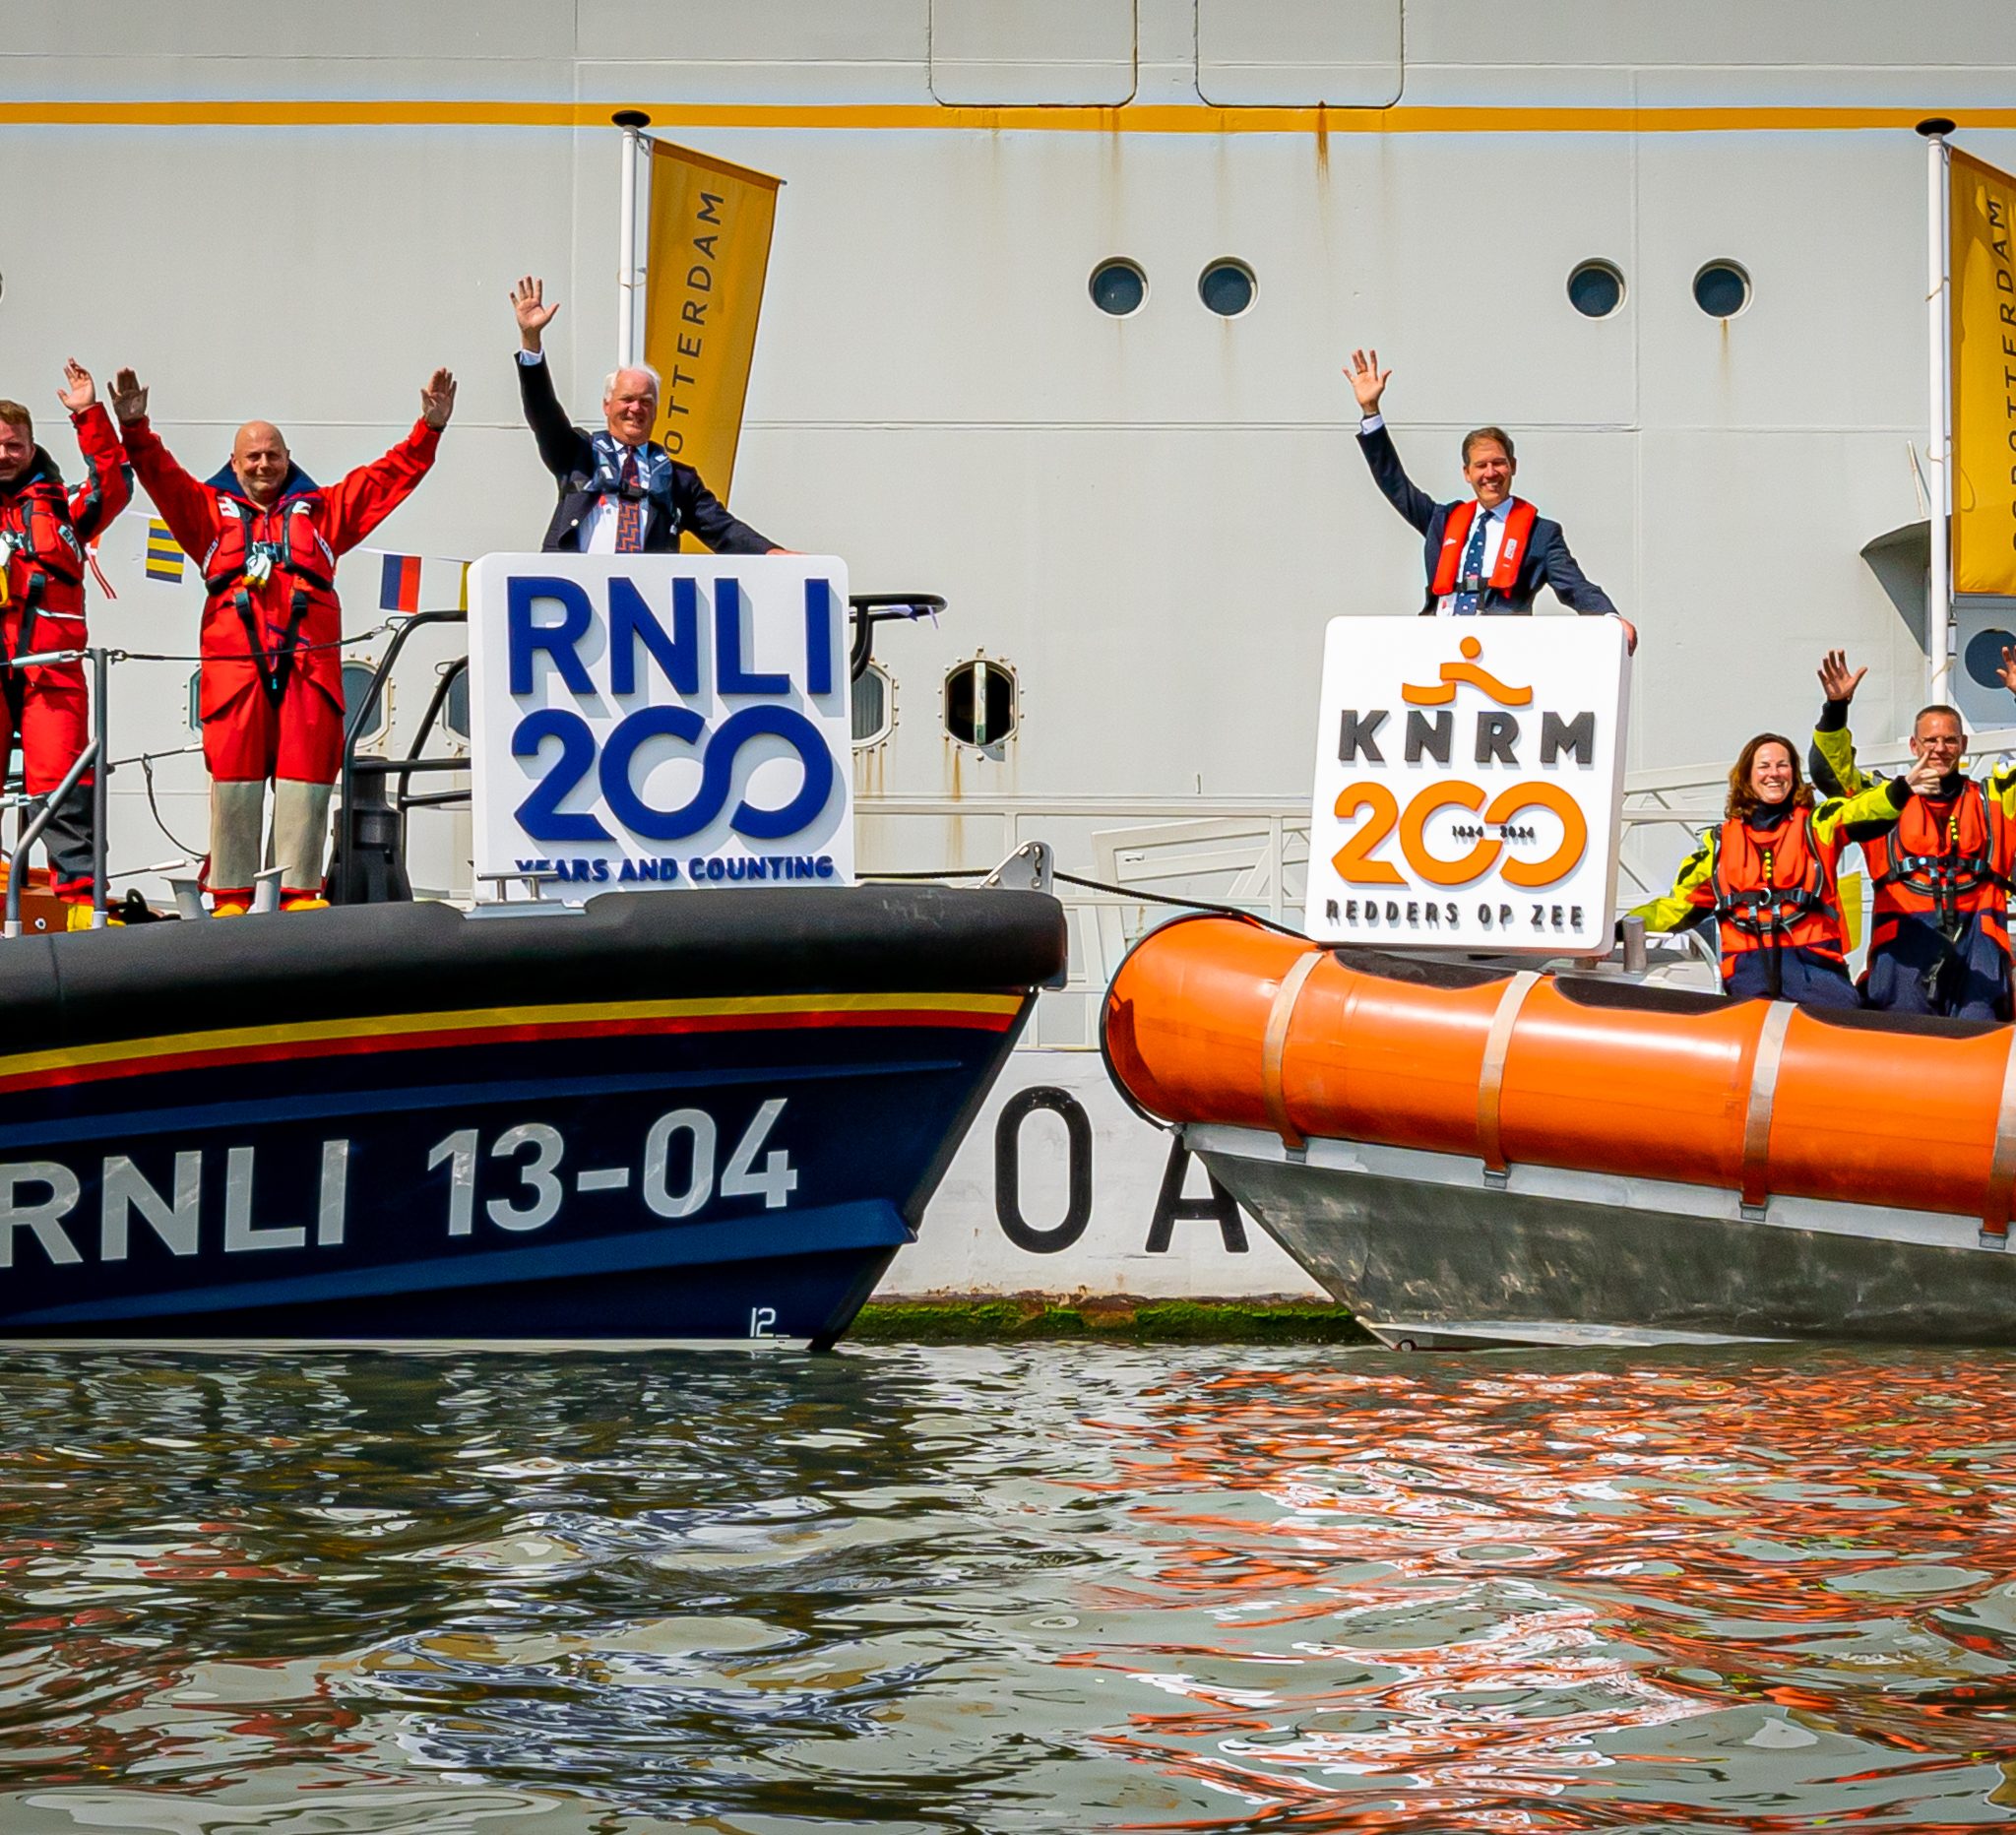 Directeur van de RNLI Mark Dowie (op de neus van de linker reddingboot) en Directeur Jacob Tas (op de neus van de rechter reddingboot) laten omringd door hun bemanning op het WMRC het gezamenlijke jubileumlogo zien.